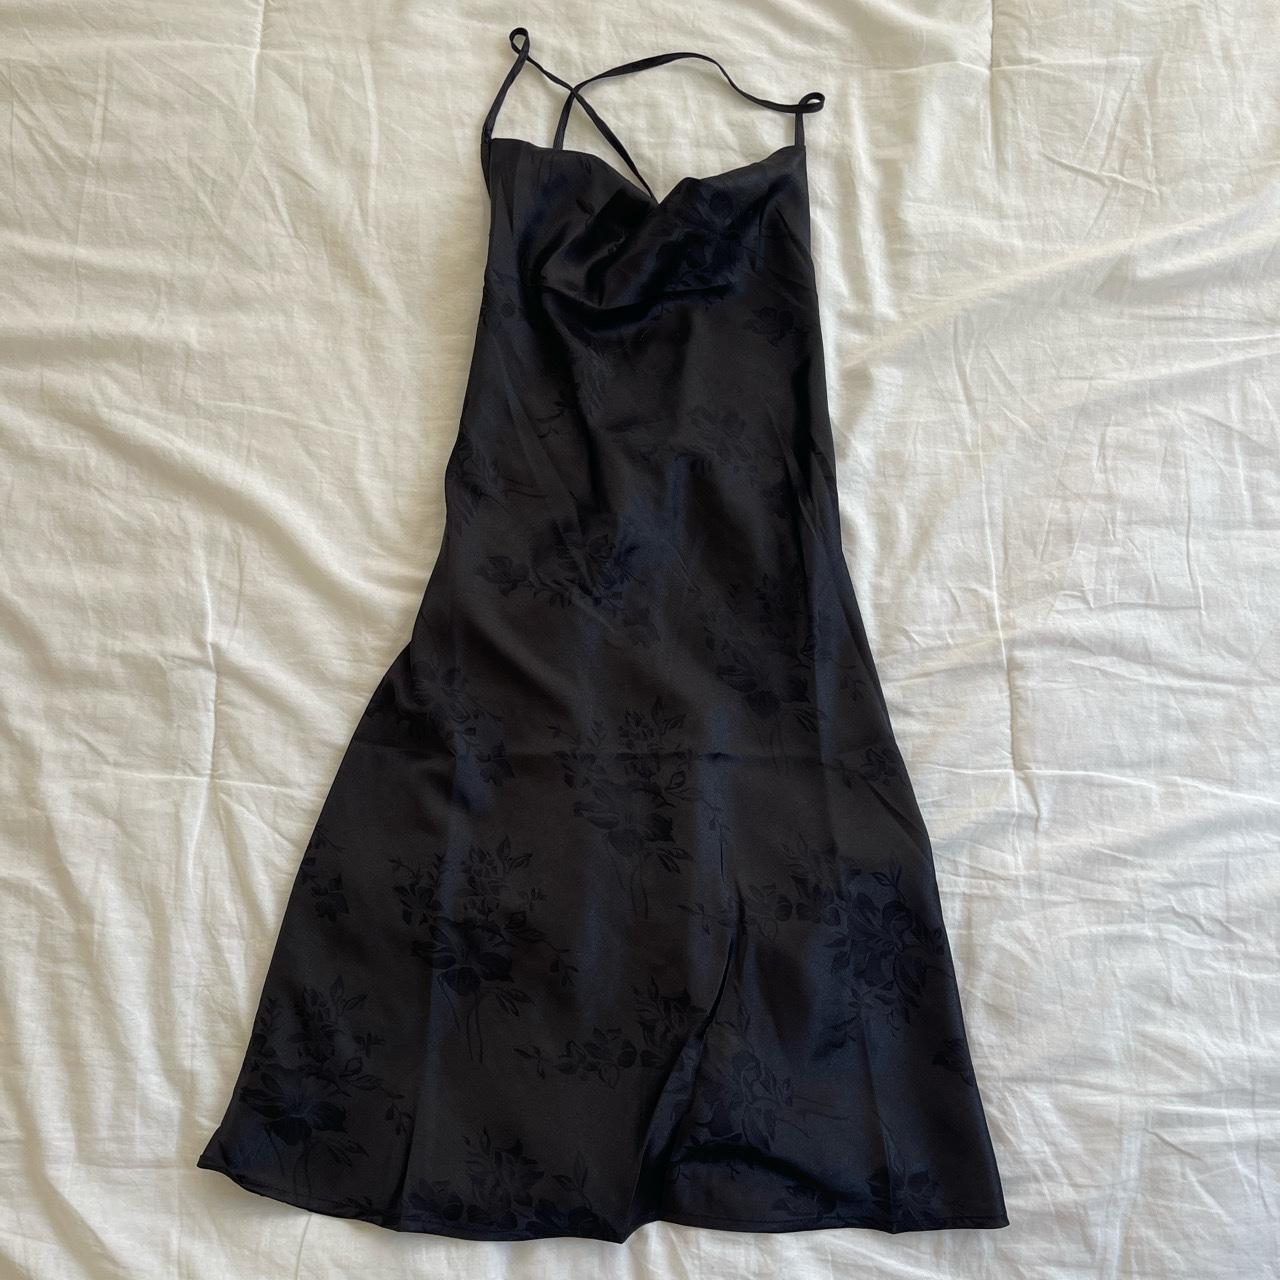 black silk dress open tie back - Depop